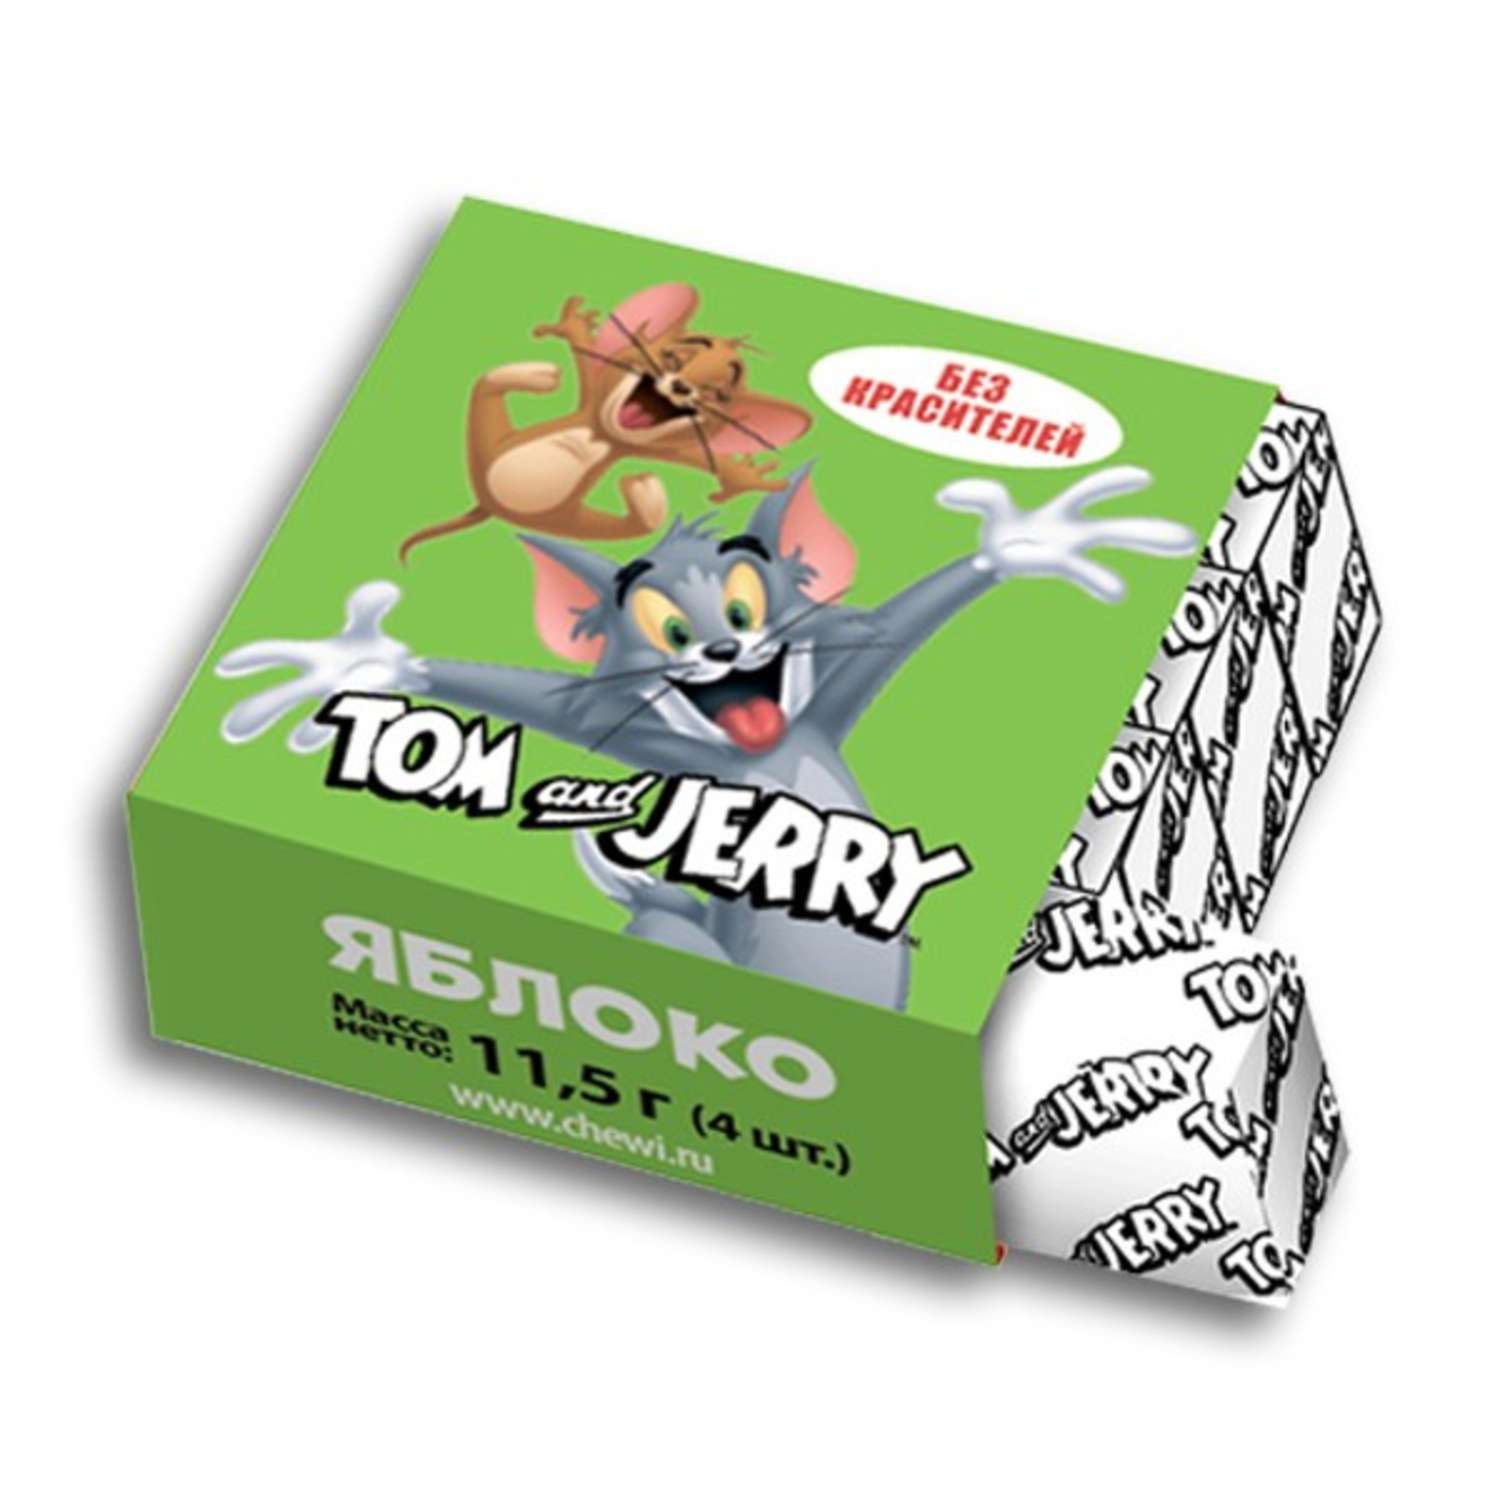 Мармелад жевательный Tom and Jerry (WB) набор подарочный ассорти микс вкусов 48шт - фото 1